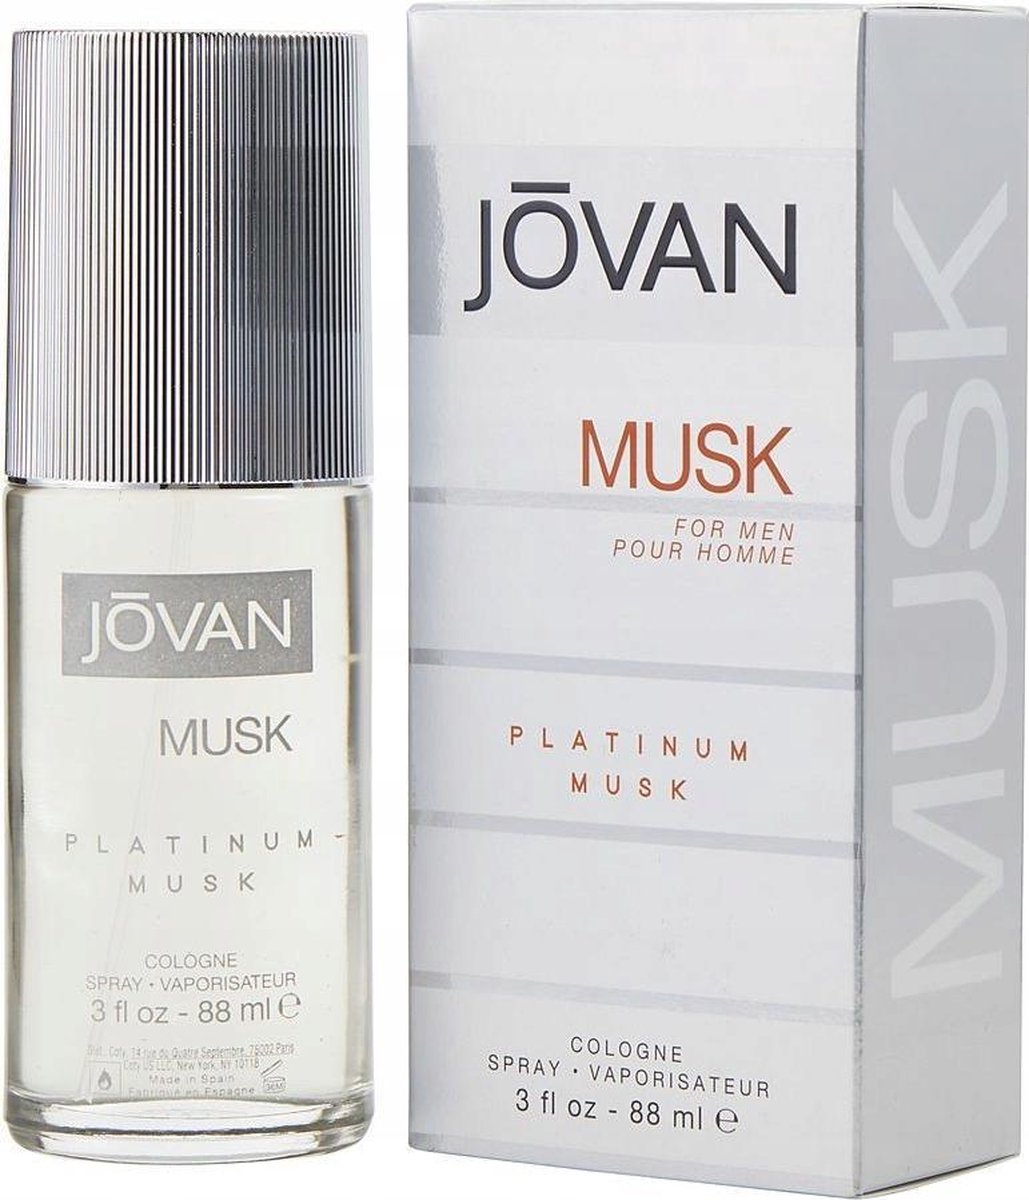 Jovan - Musk Platinum Musk - Eau de cologne - 88ml